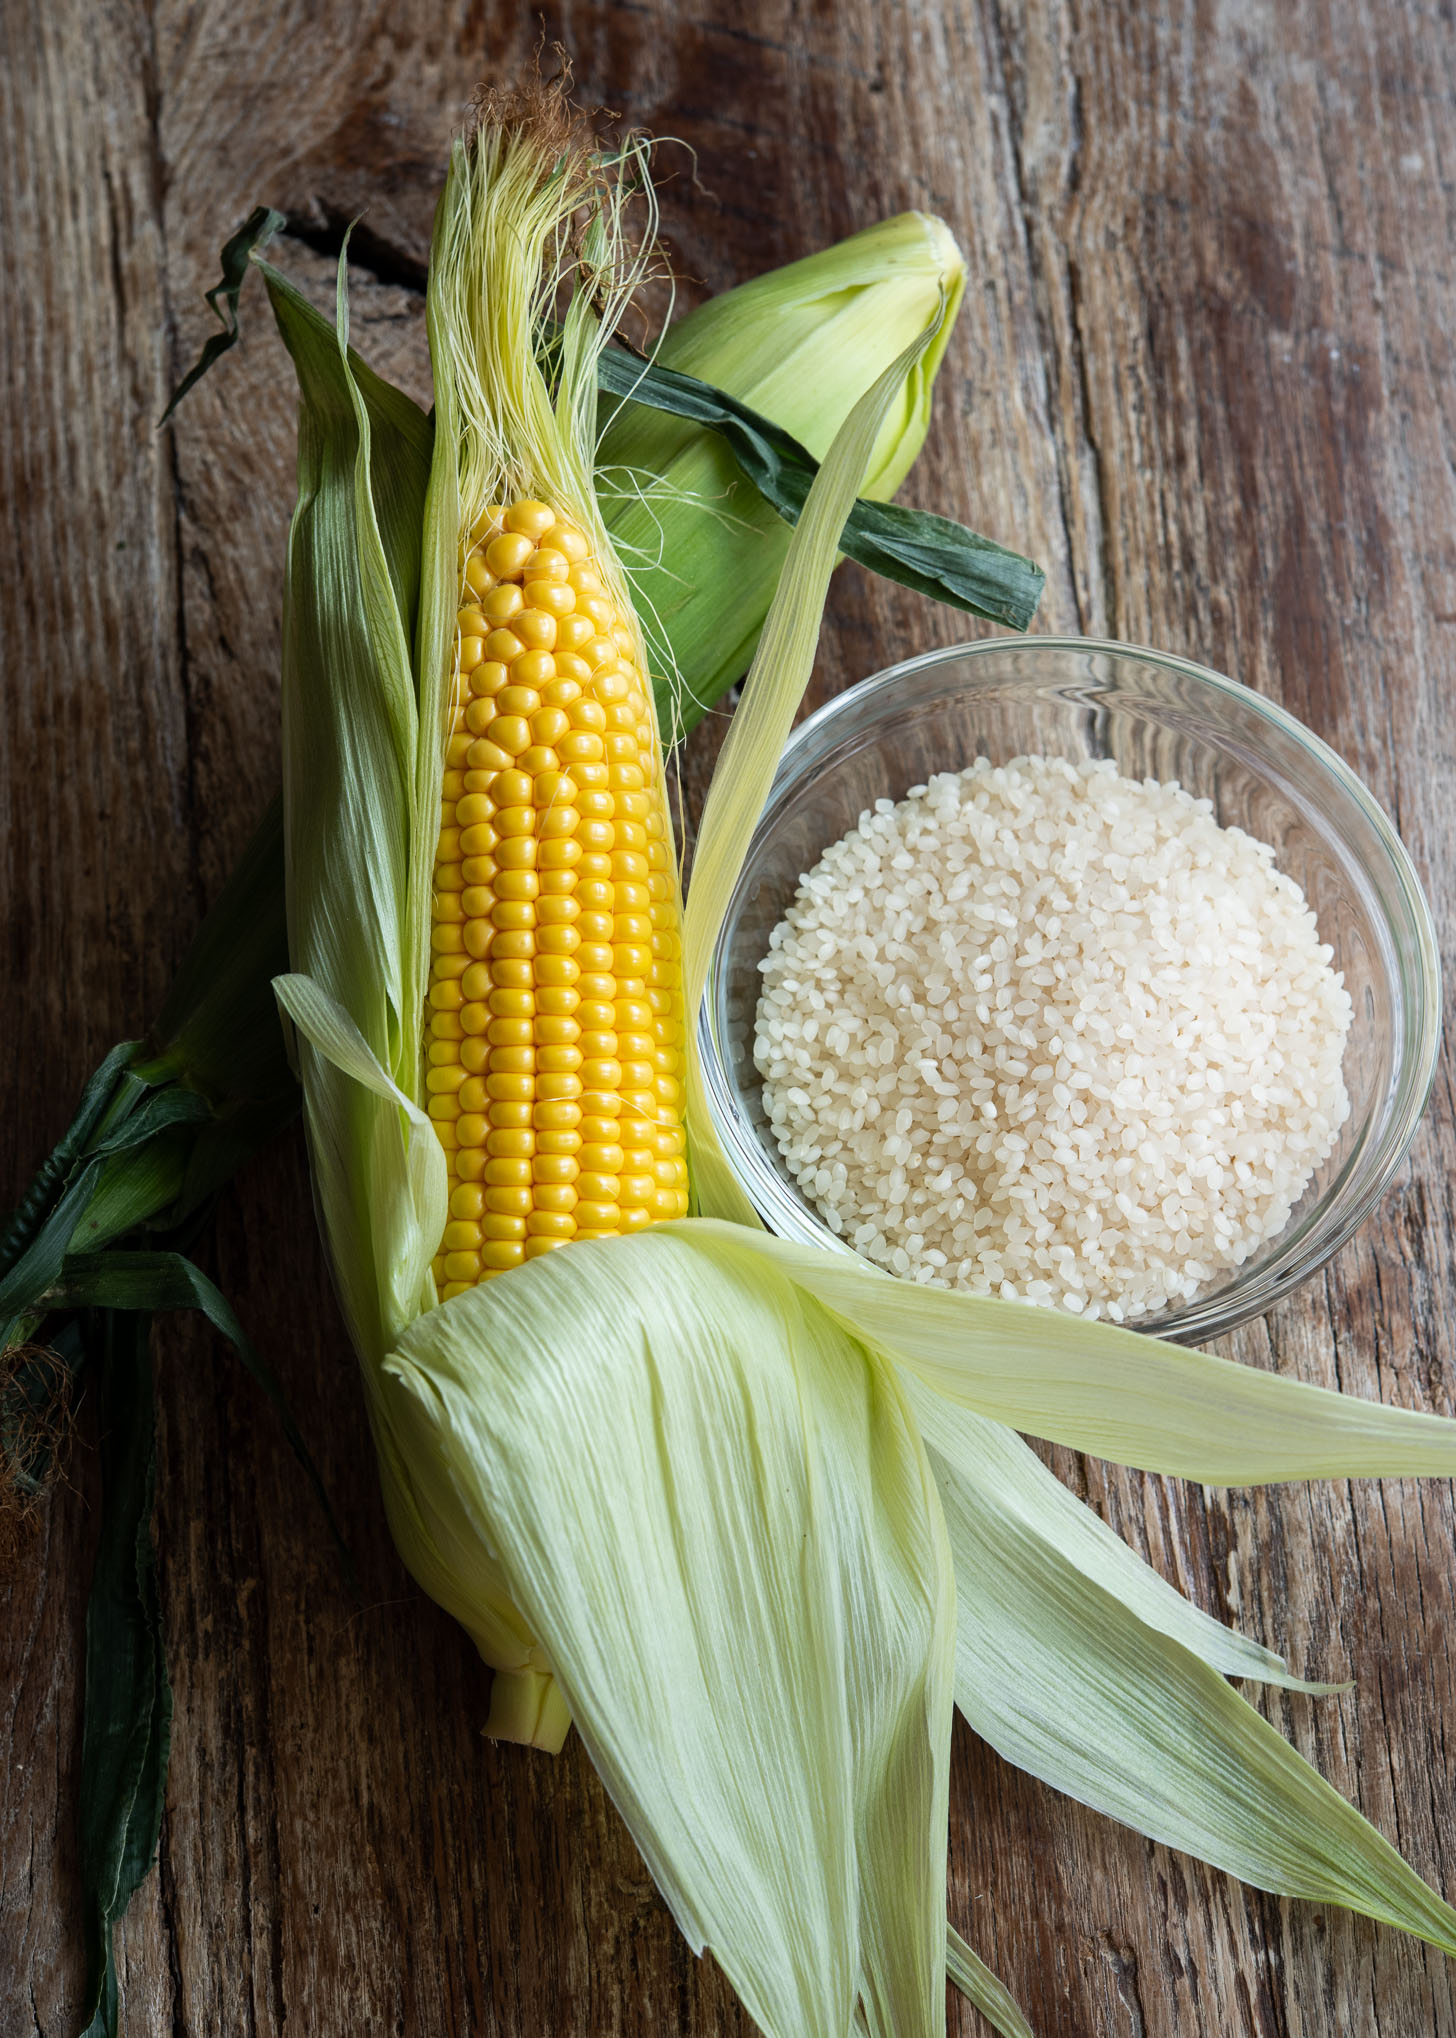 Fresh sweet corn and rice as key ingredients to make Korean style corn rice.